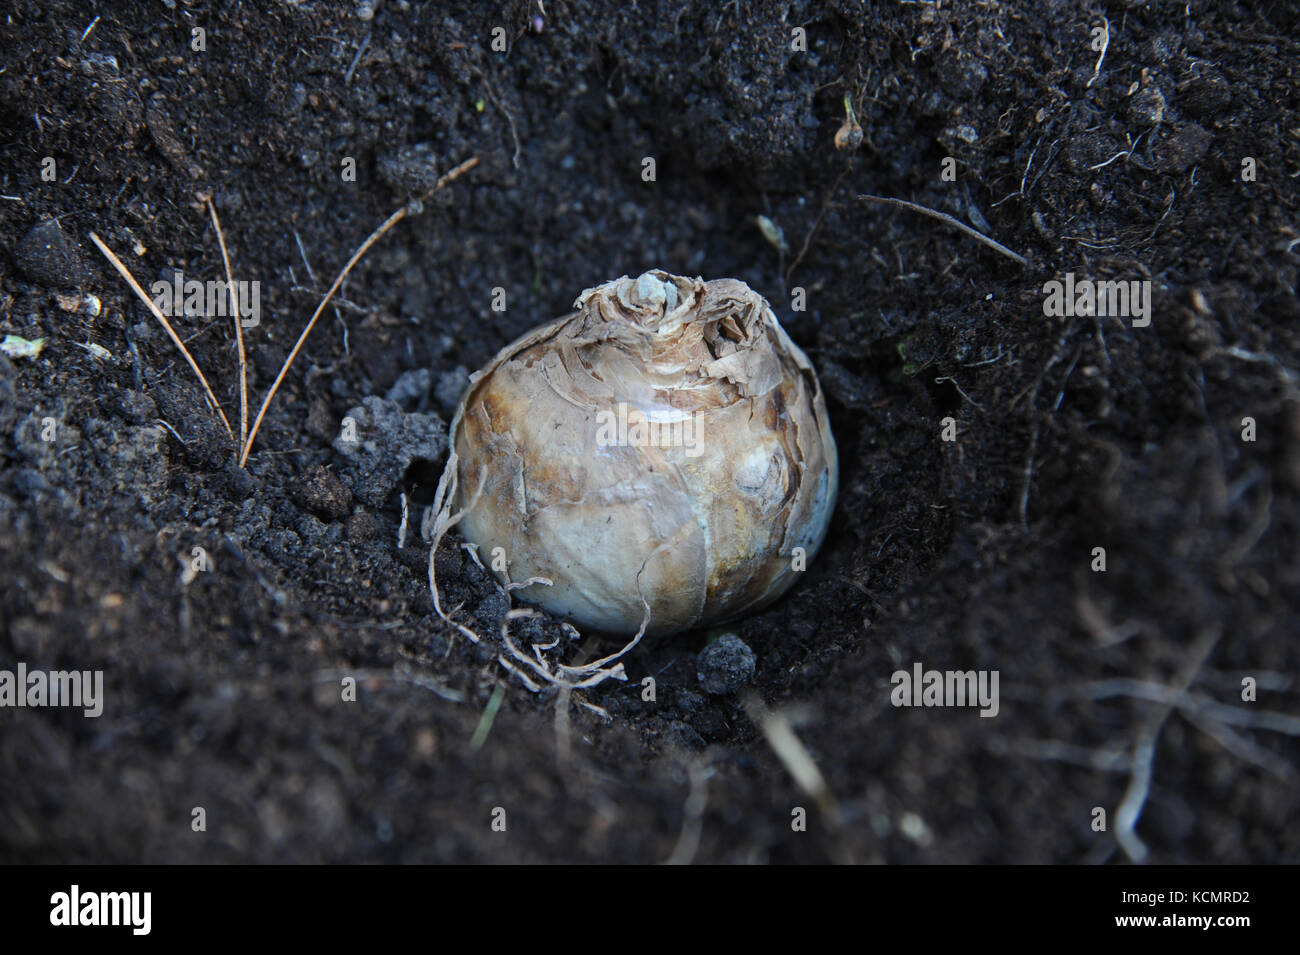 Un bulbo de narciso o narcussus listo para siembra colocadas en tierra del jardín Foto de stock